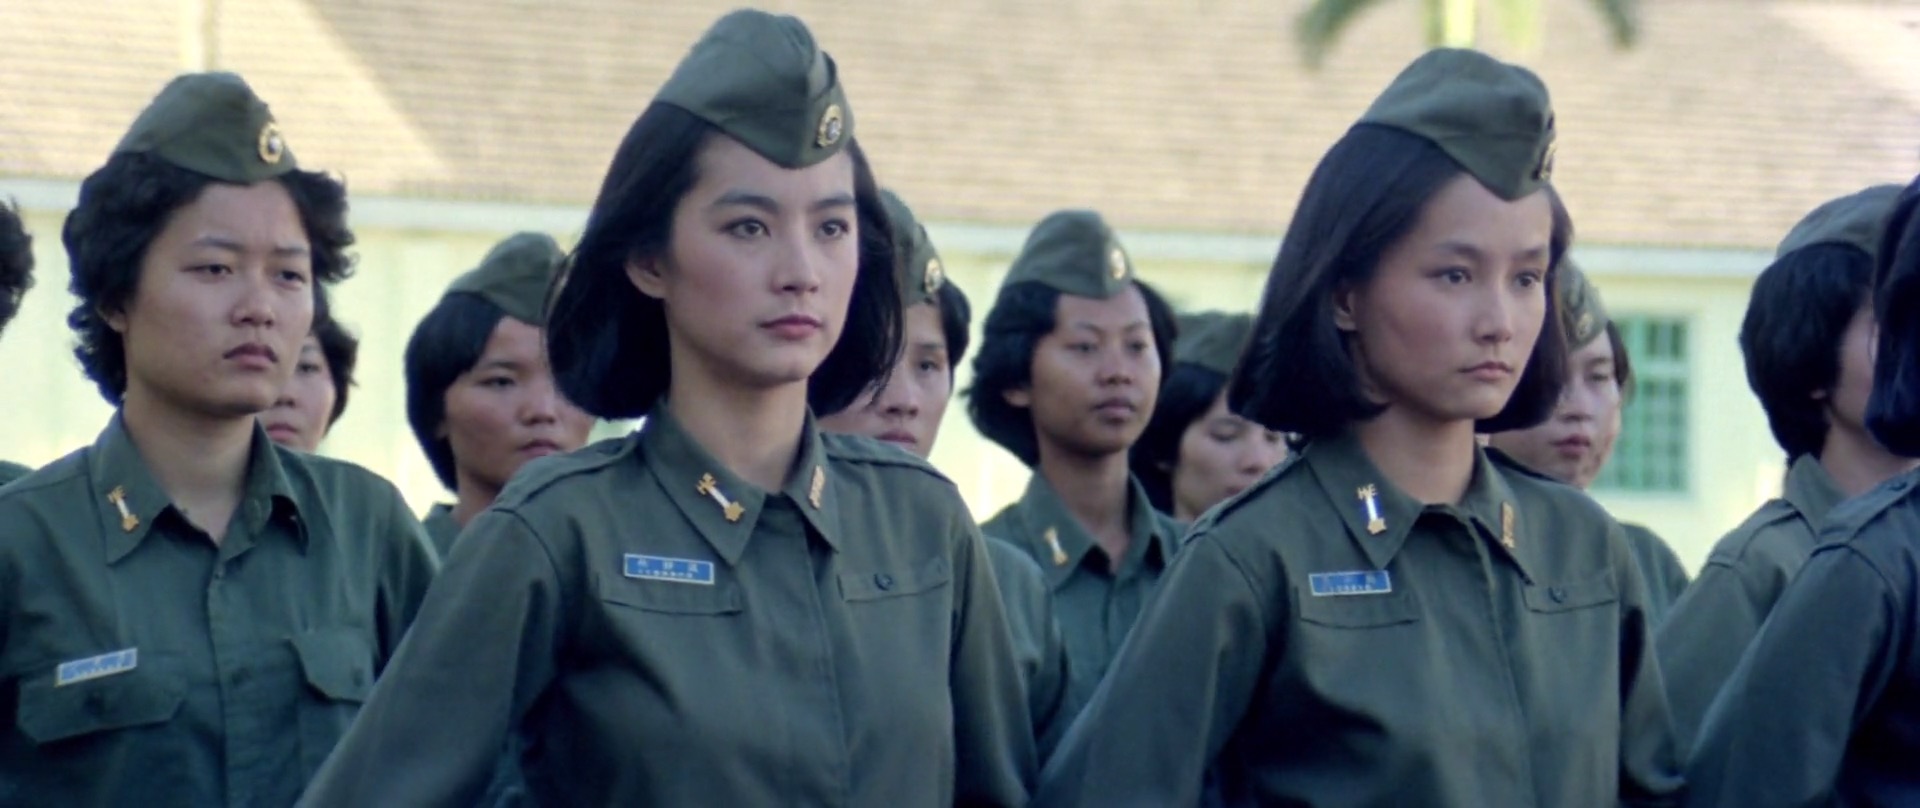 原创:林青霞版《中国女兵》,中国军事电影不可逾越的颜值巅峰